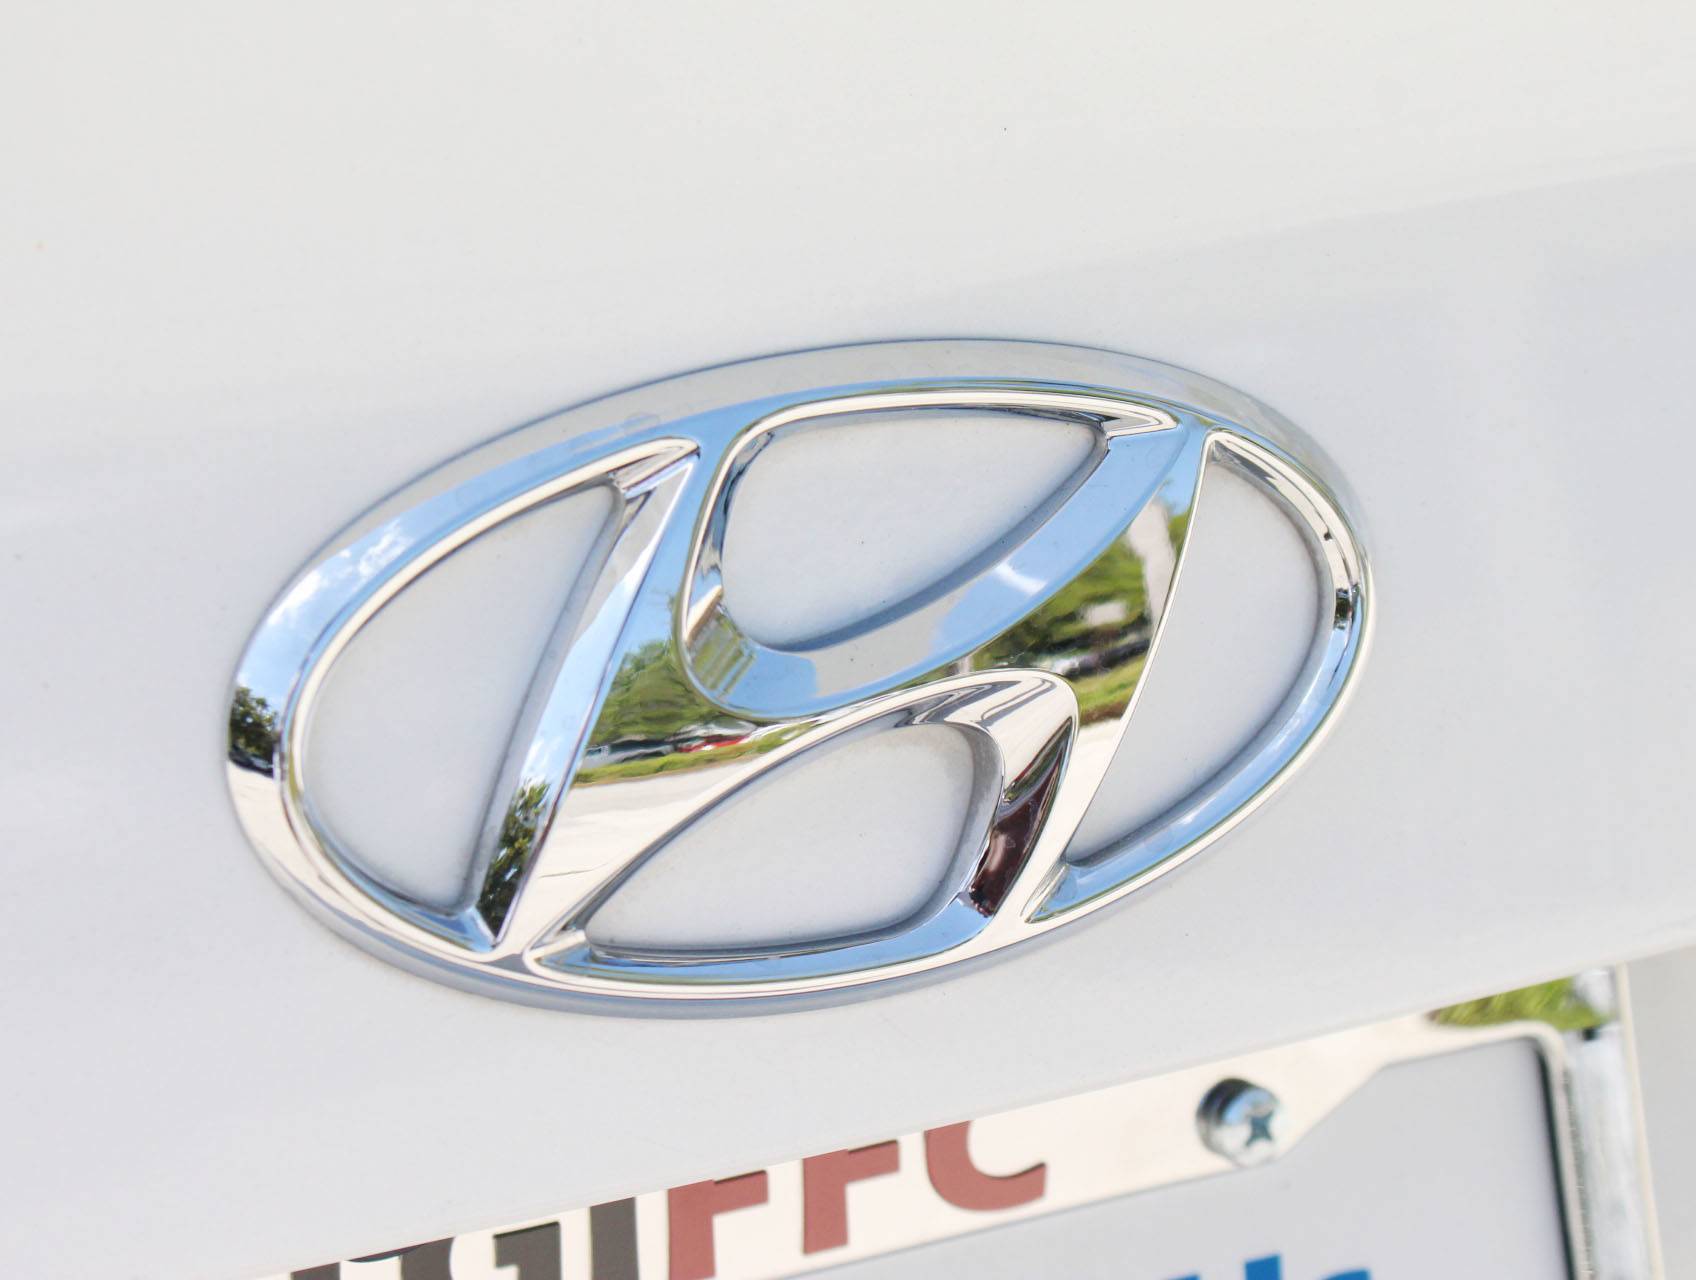 Florida Fine Cars - Used HYUNDAI SONATA 2015 MARGATE Limited